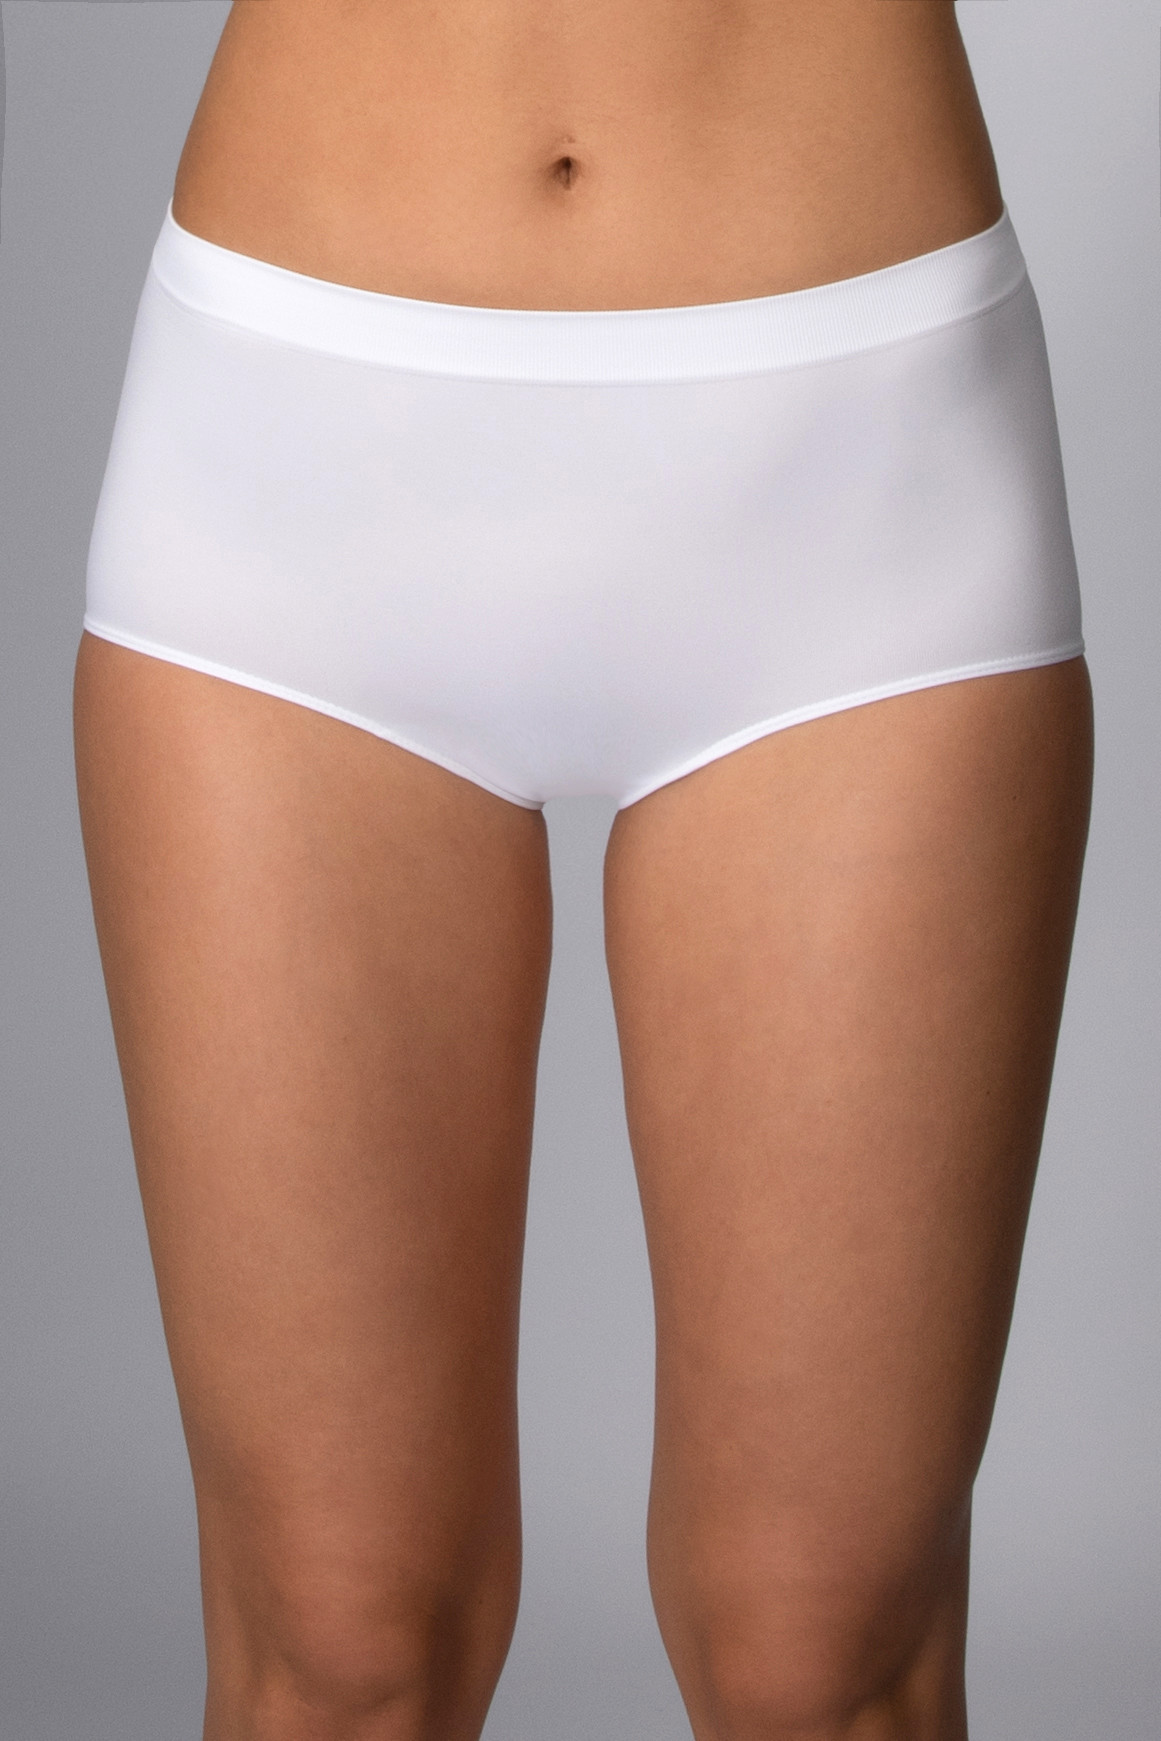 Kalhotky s vyšším pasem bezešvé Culotte Intimidea Barva: Bílá, velikost L/XL